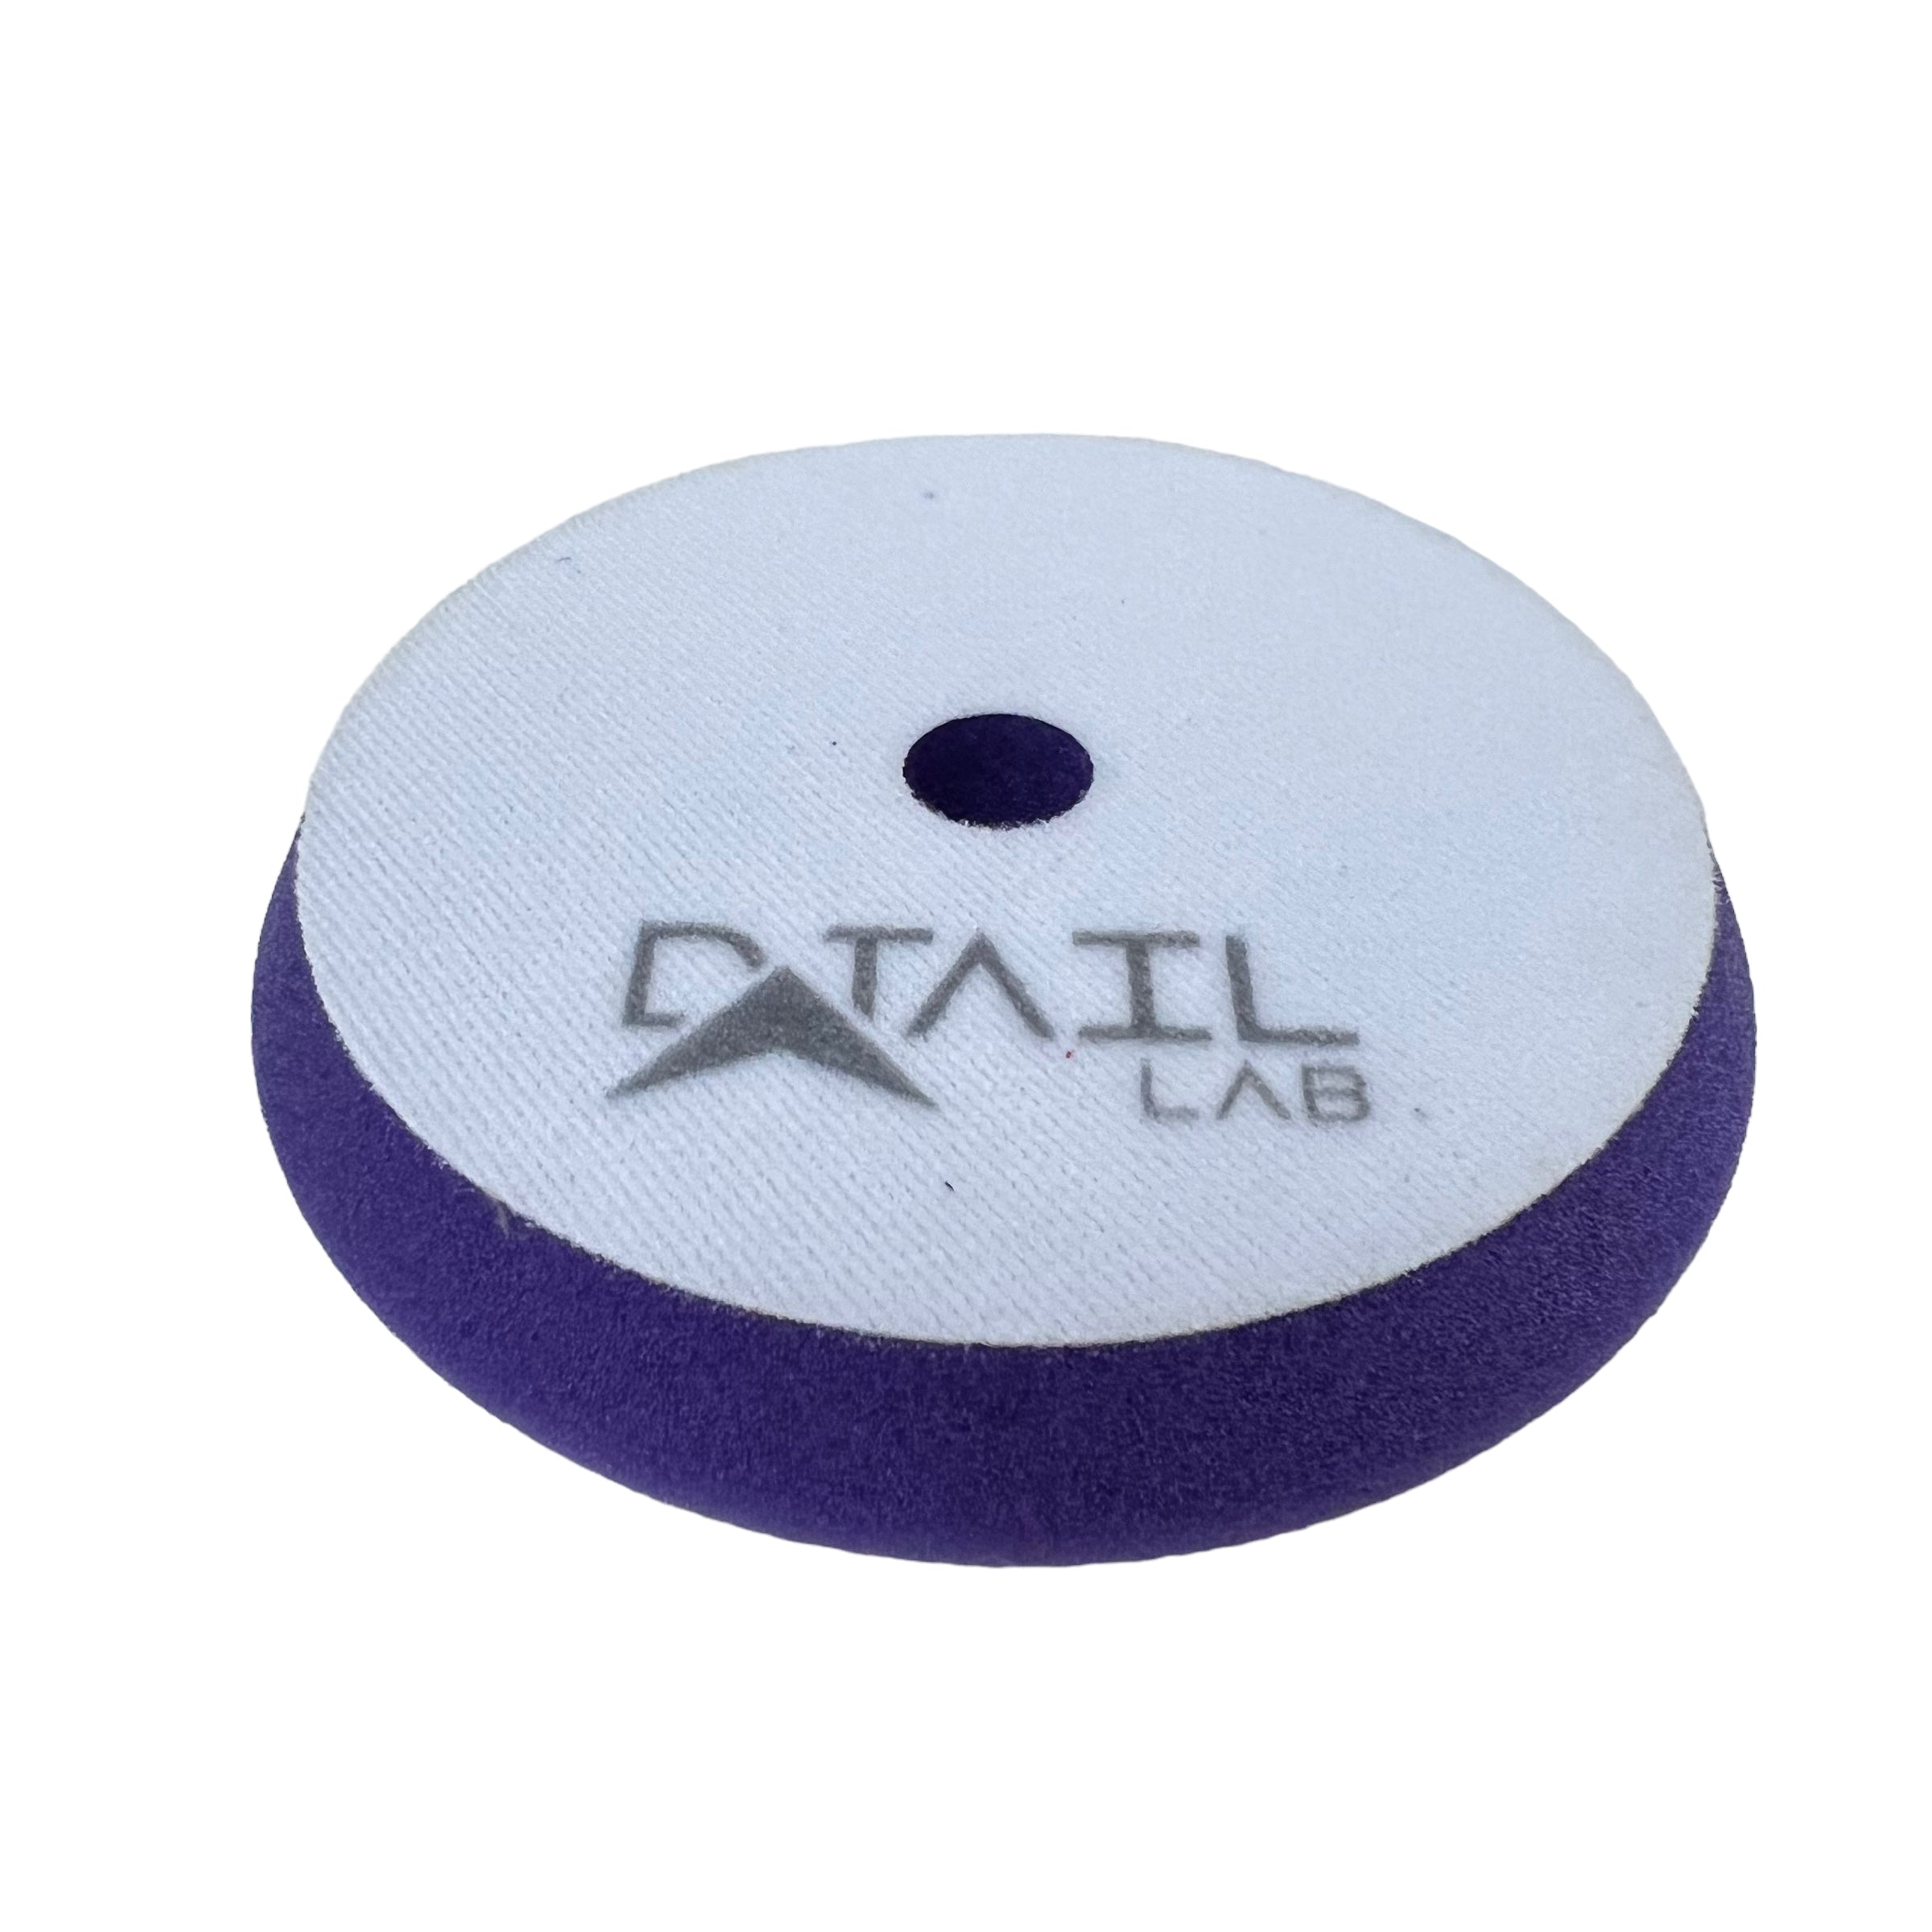 Uni-X Detailing Purple Foam Pad